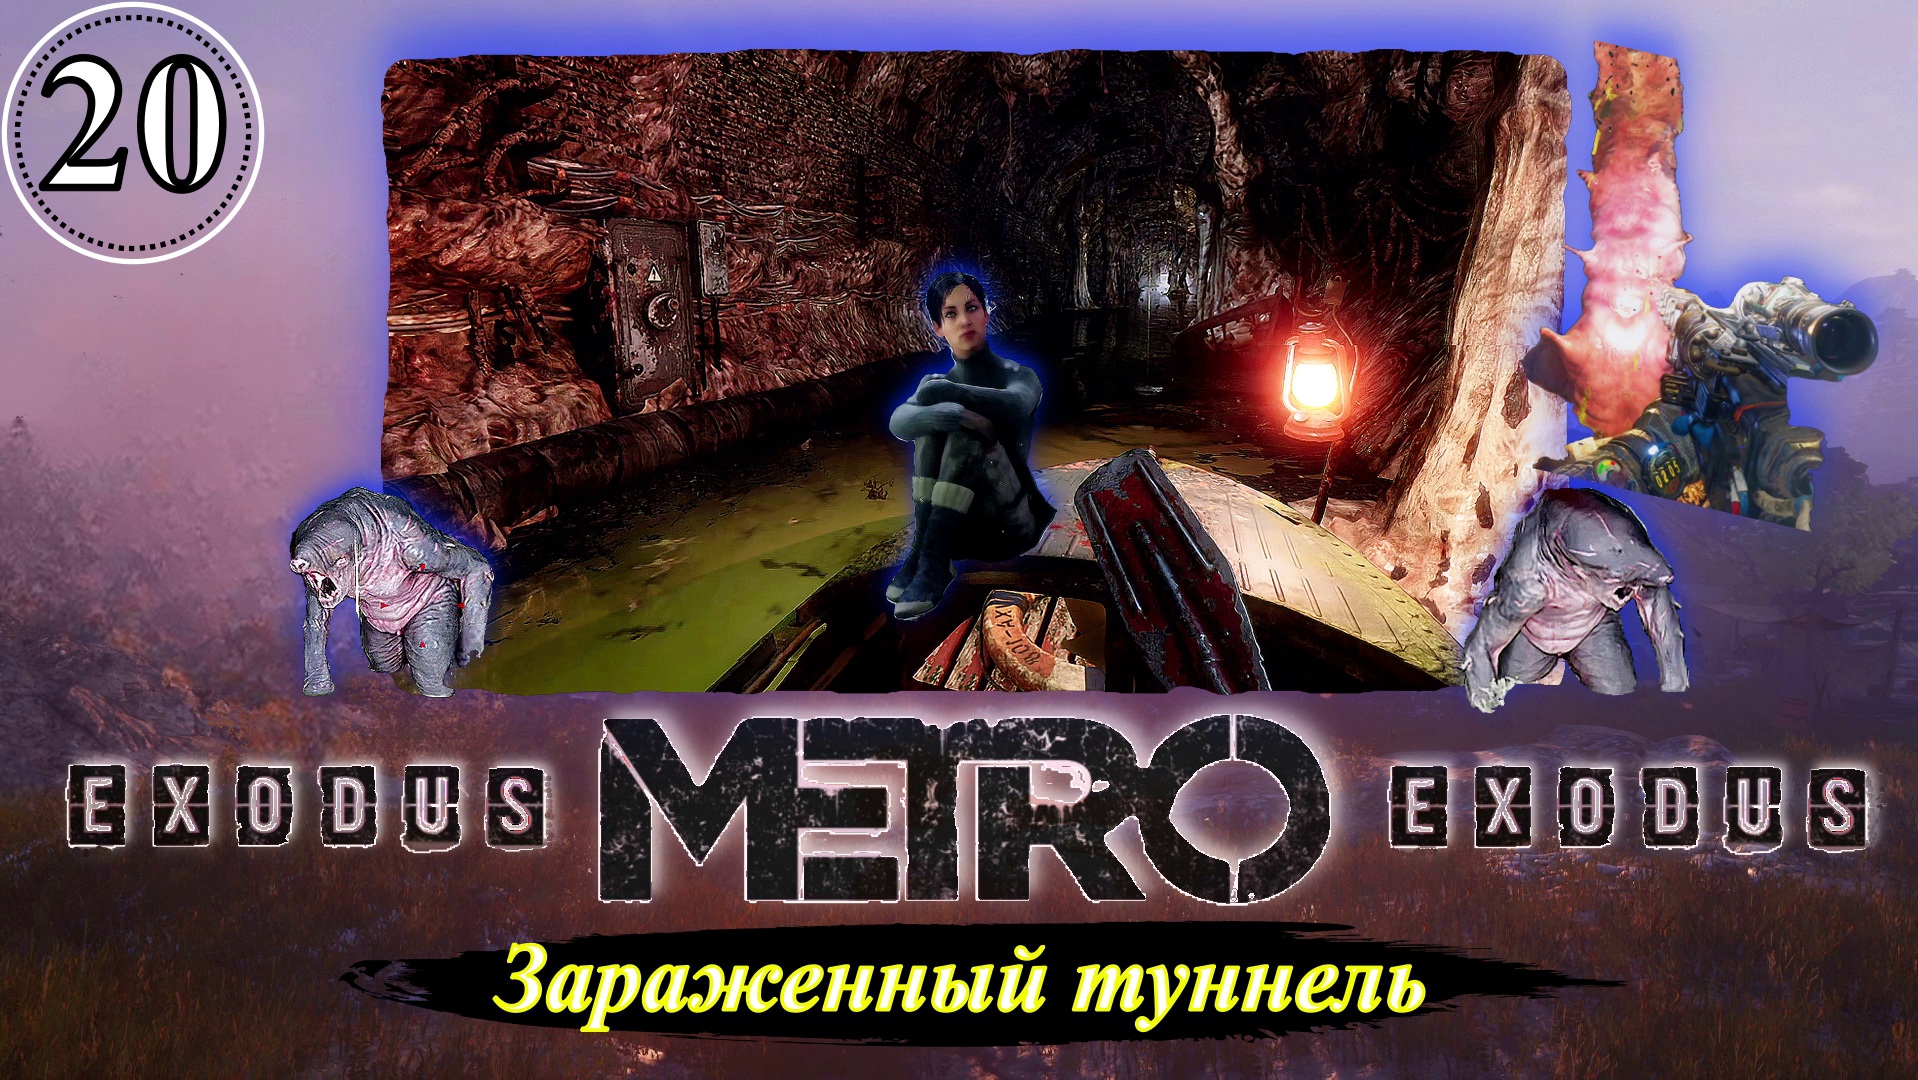 Metro Exodus Зараженный туннель - Прохождение. Часть 20.mp4